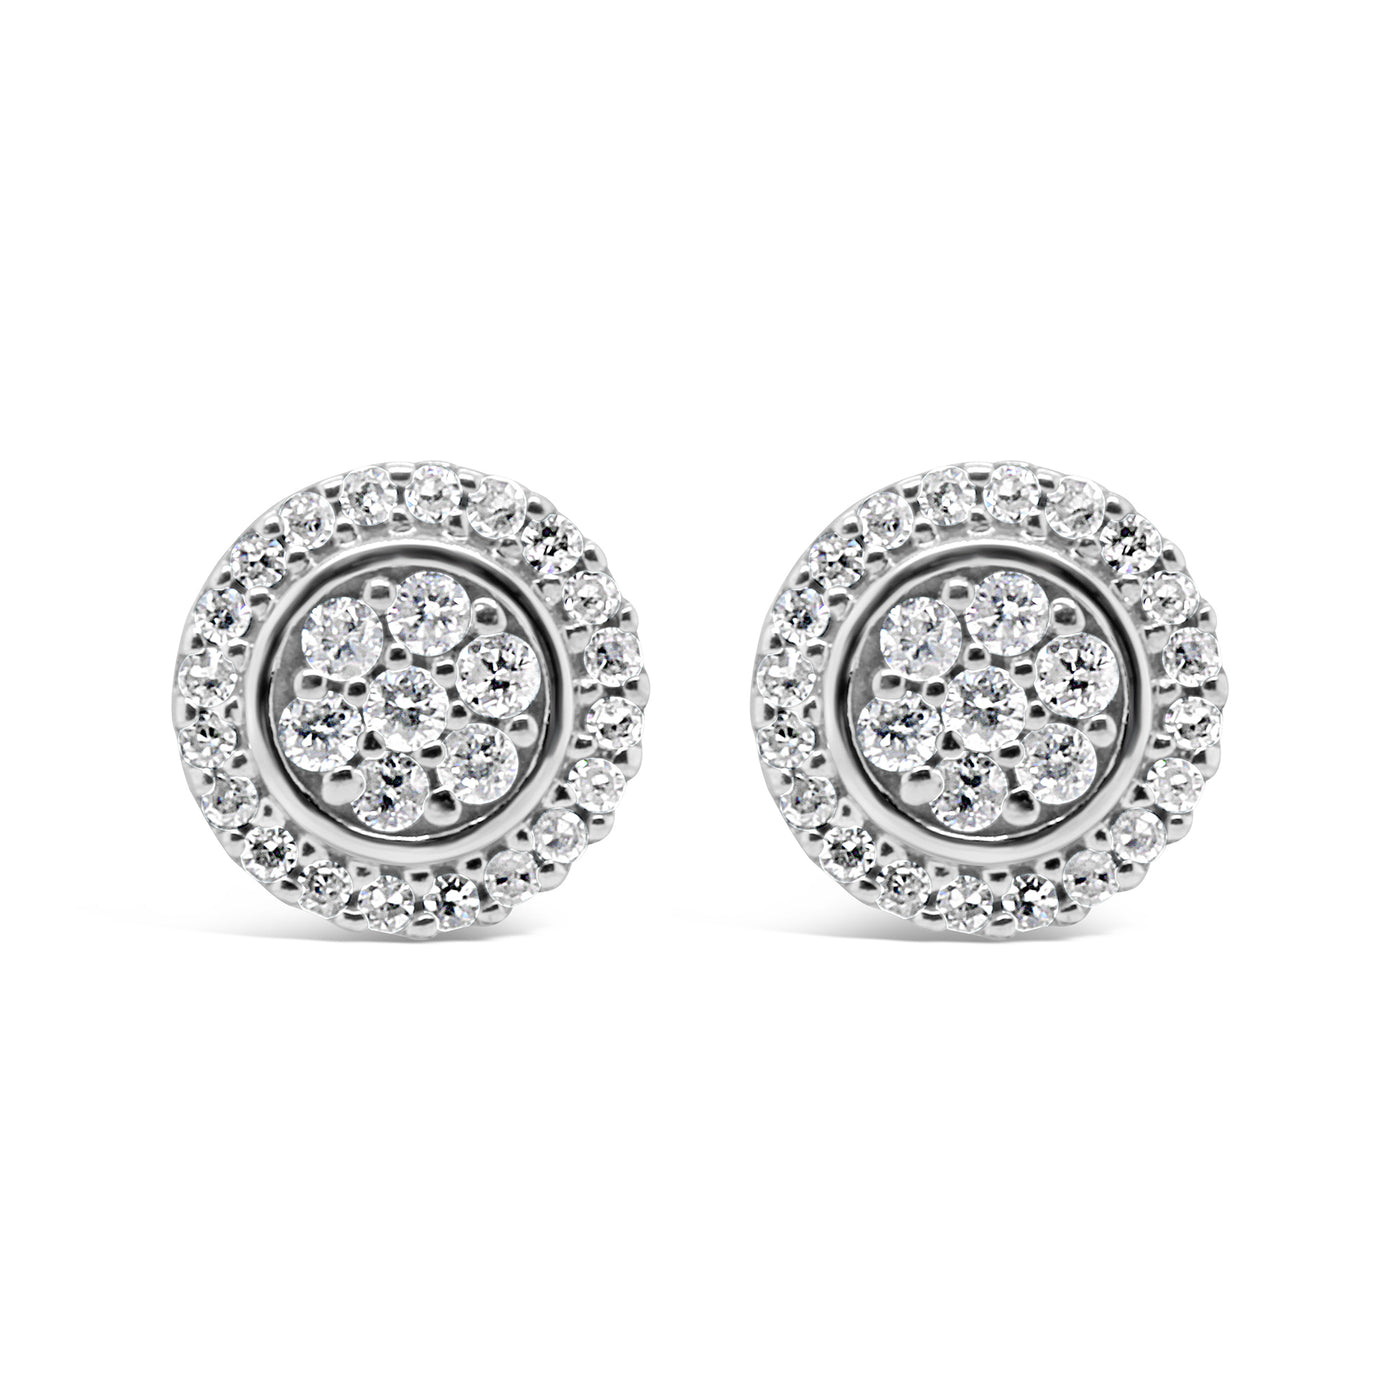 10k White Gold Diamond Cluster Earrings